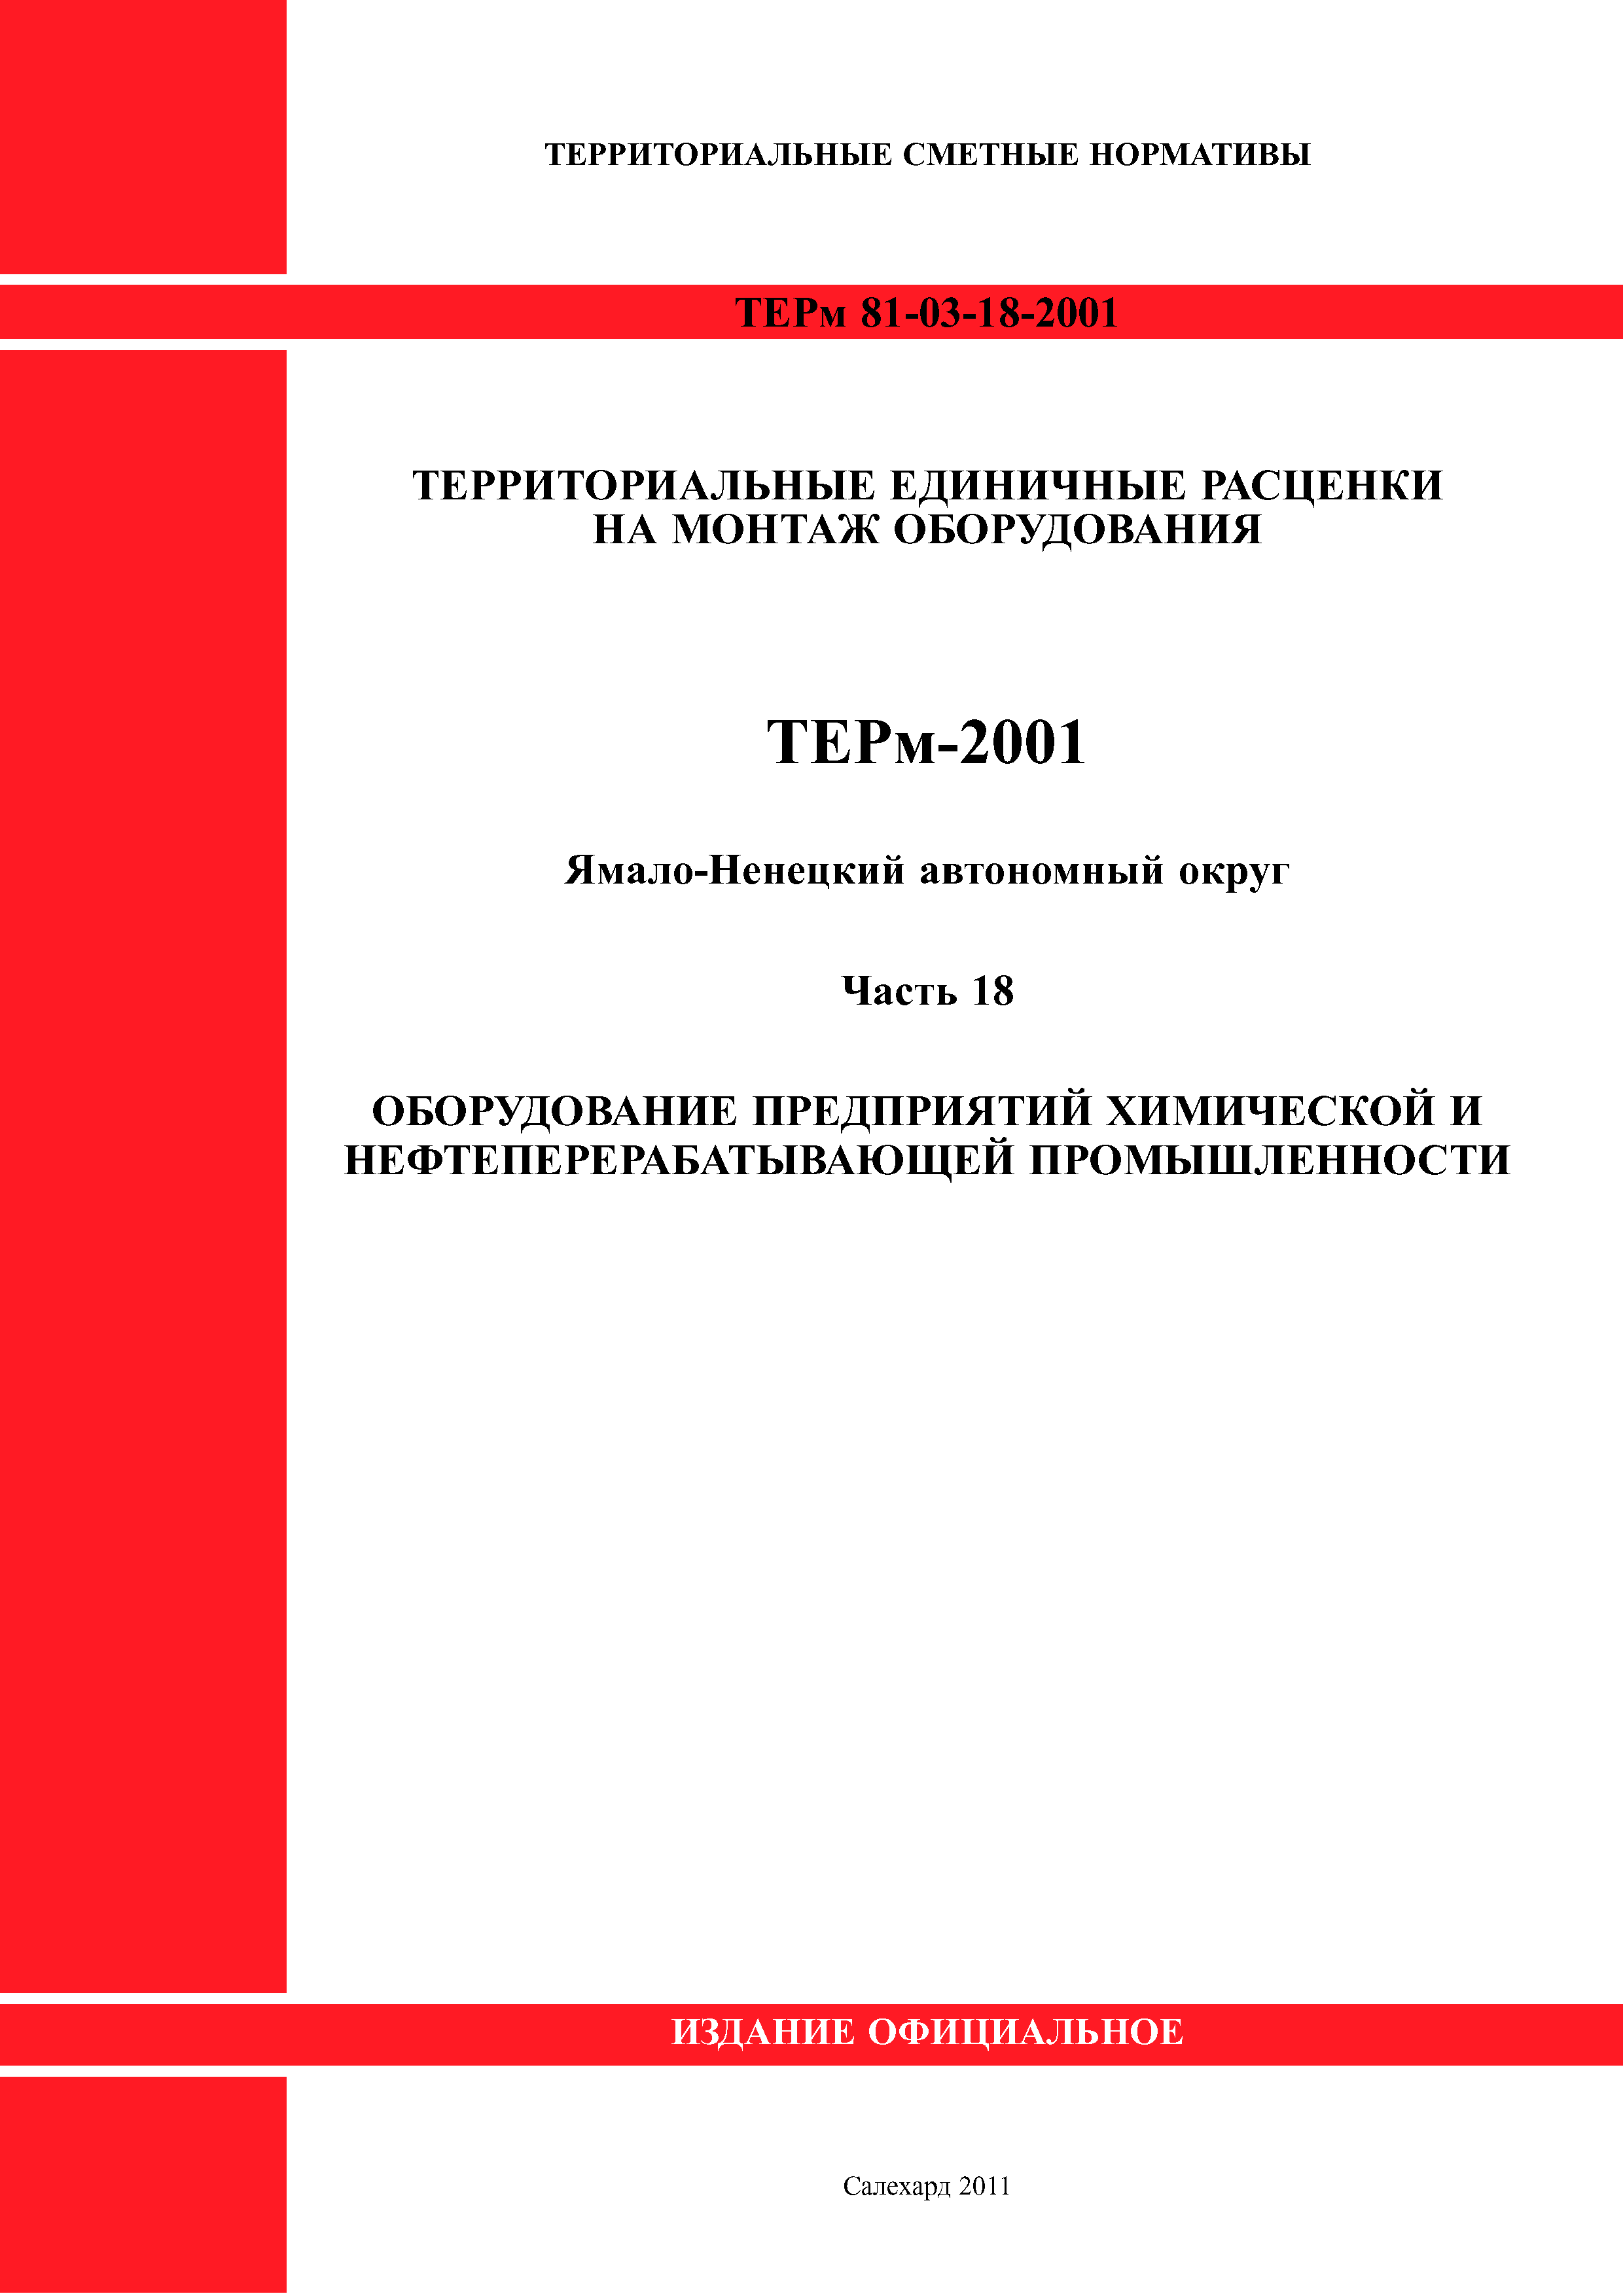 ТЕРм Ямало-Ненецкий автономный округ 18-2001